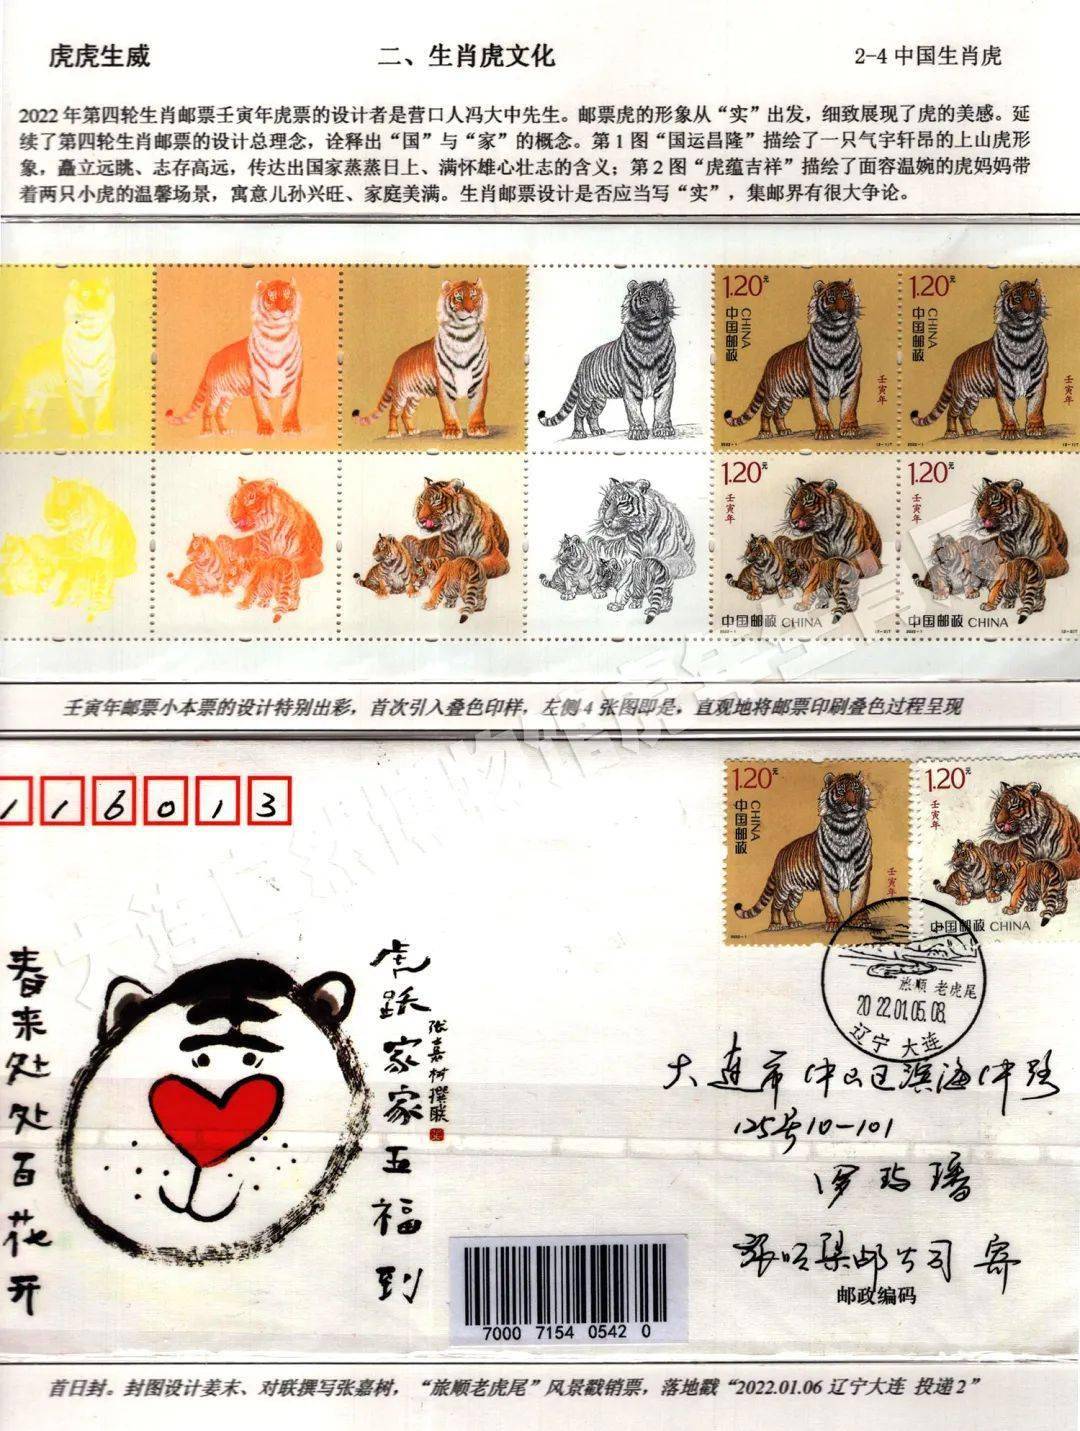 大连自然博物馆虎年生肖展线上展览虎虎生威中国虎年生肖邮票下